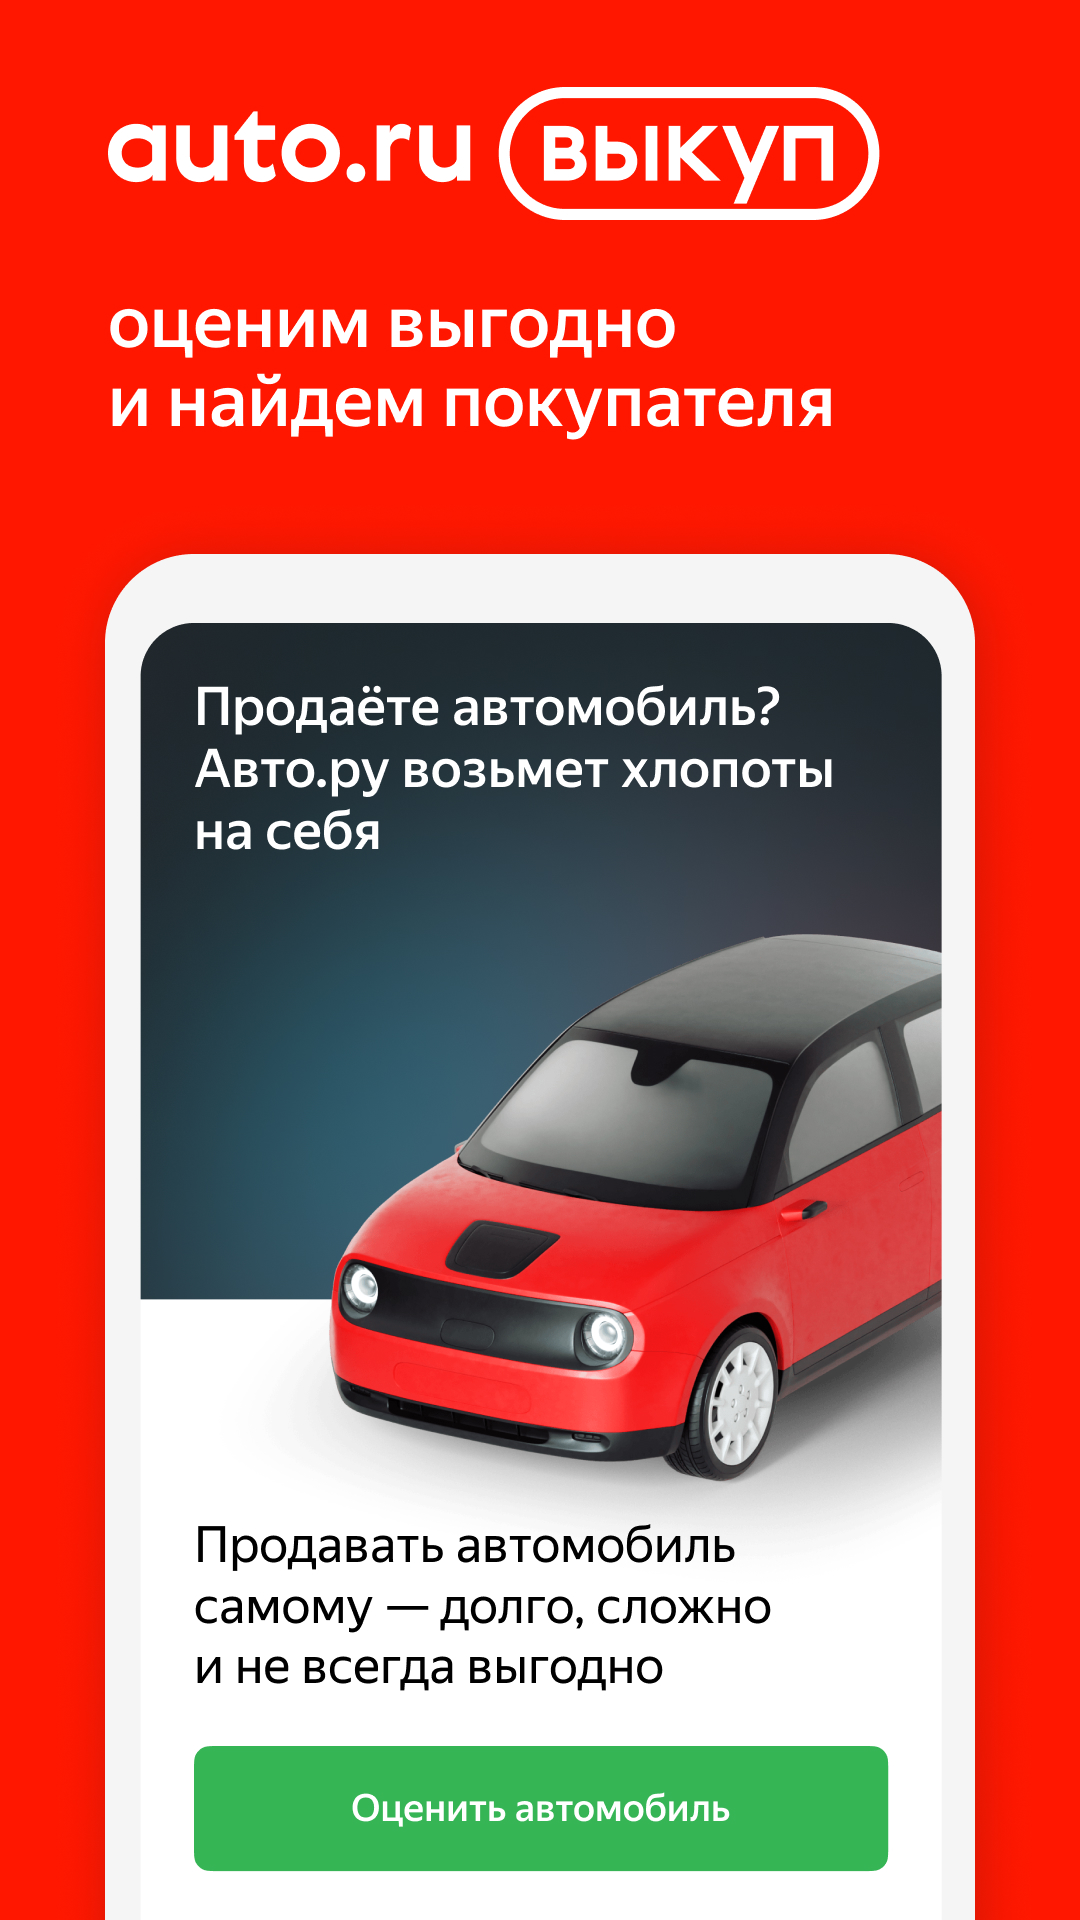 Изображение: Авто.ру: купить и продать авто